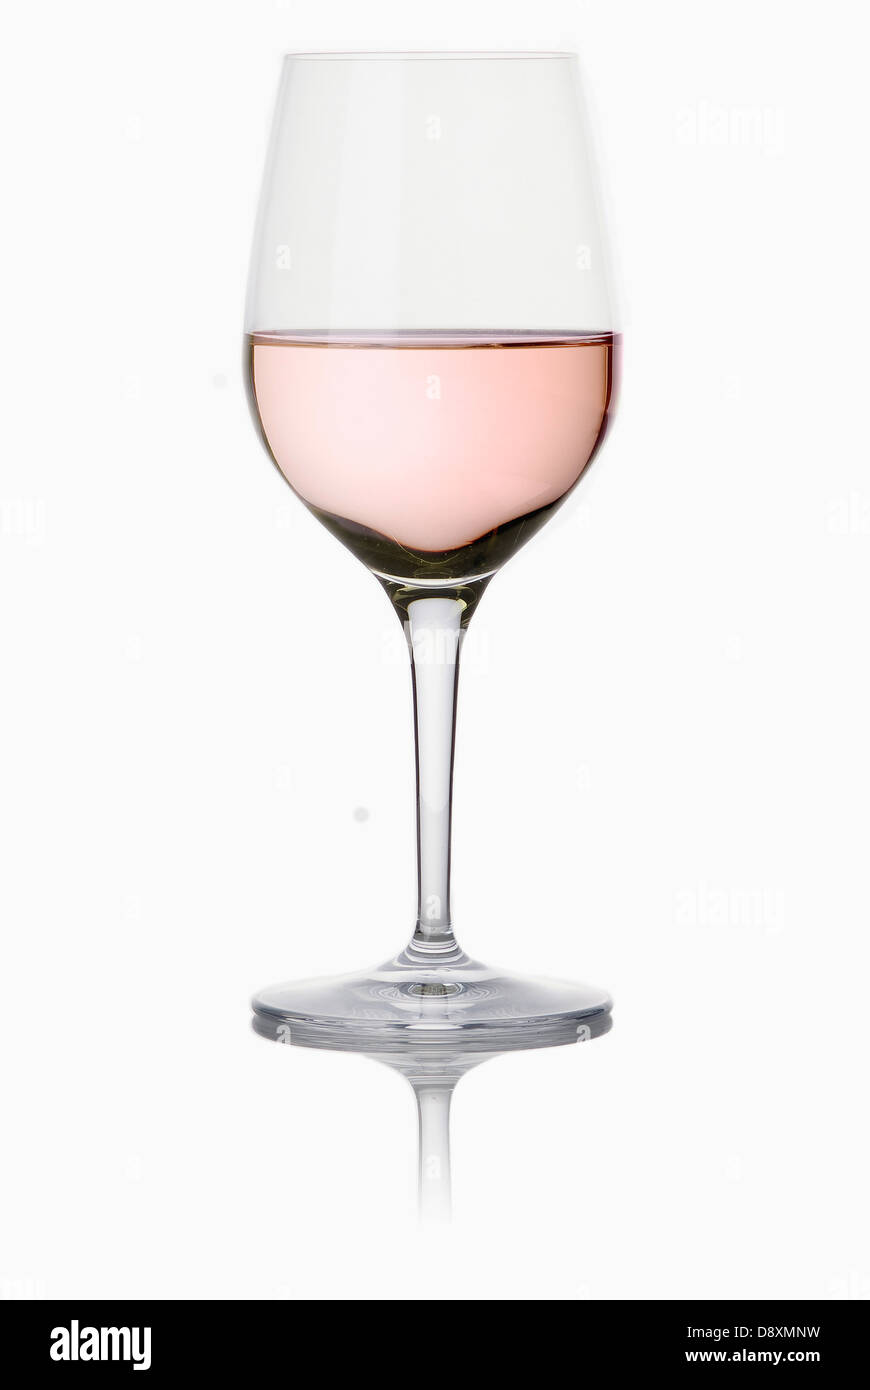 Verre a pied de vin rosé Photo Stock - Alamy